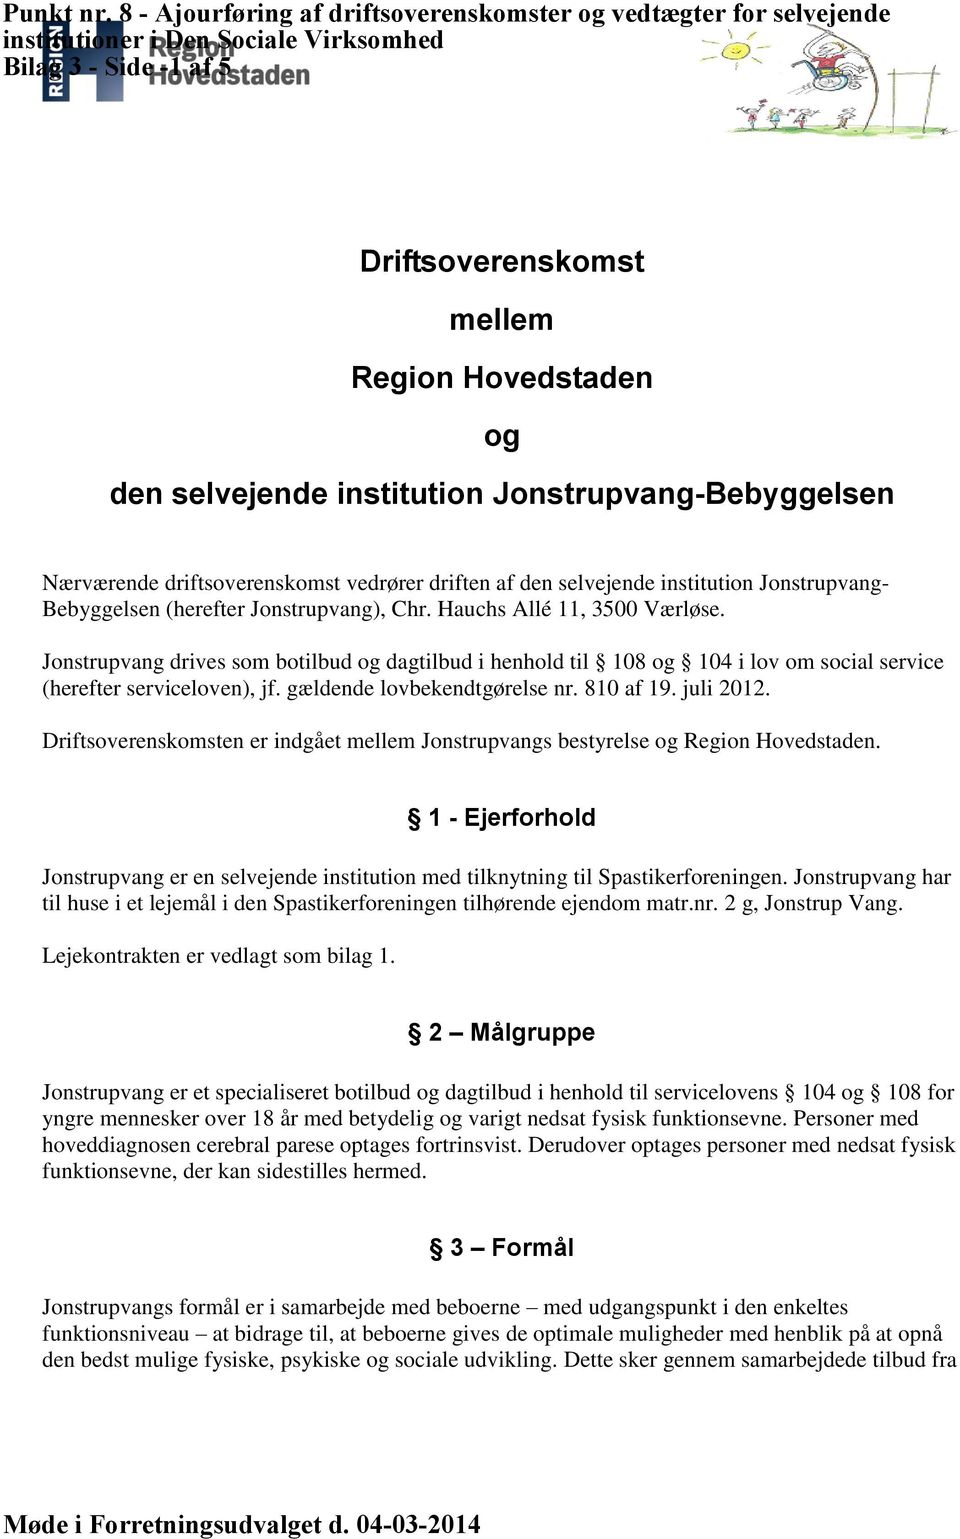 Jonstrupvang drives som botilbud og dagtilbud i henhold til 108 og 104 i lov om social service (herefter serviceloven), jf. gældende lovbekendtgørelse nr. 810 af 19. juli 2012.